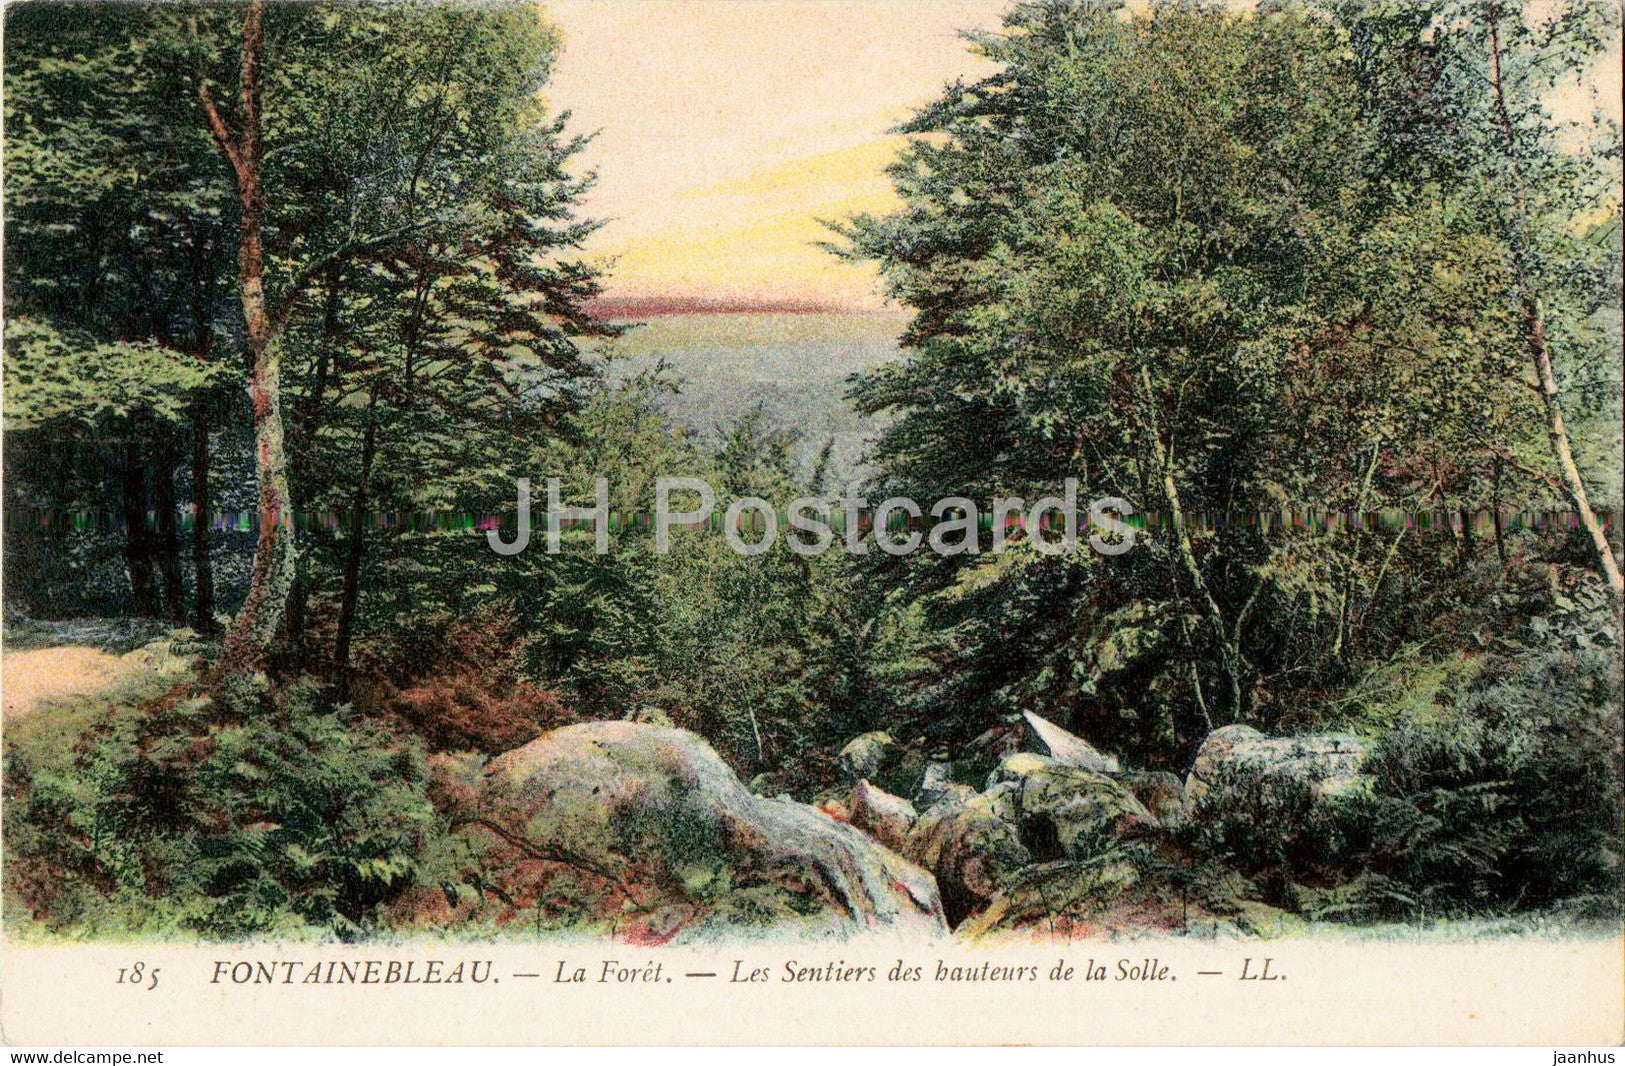 Fontainebleau - La Foret - Les Sentiers des hauteurs de la Solle - 185 - old postcard - France - used - JH Postcards